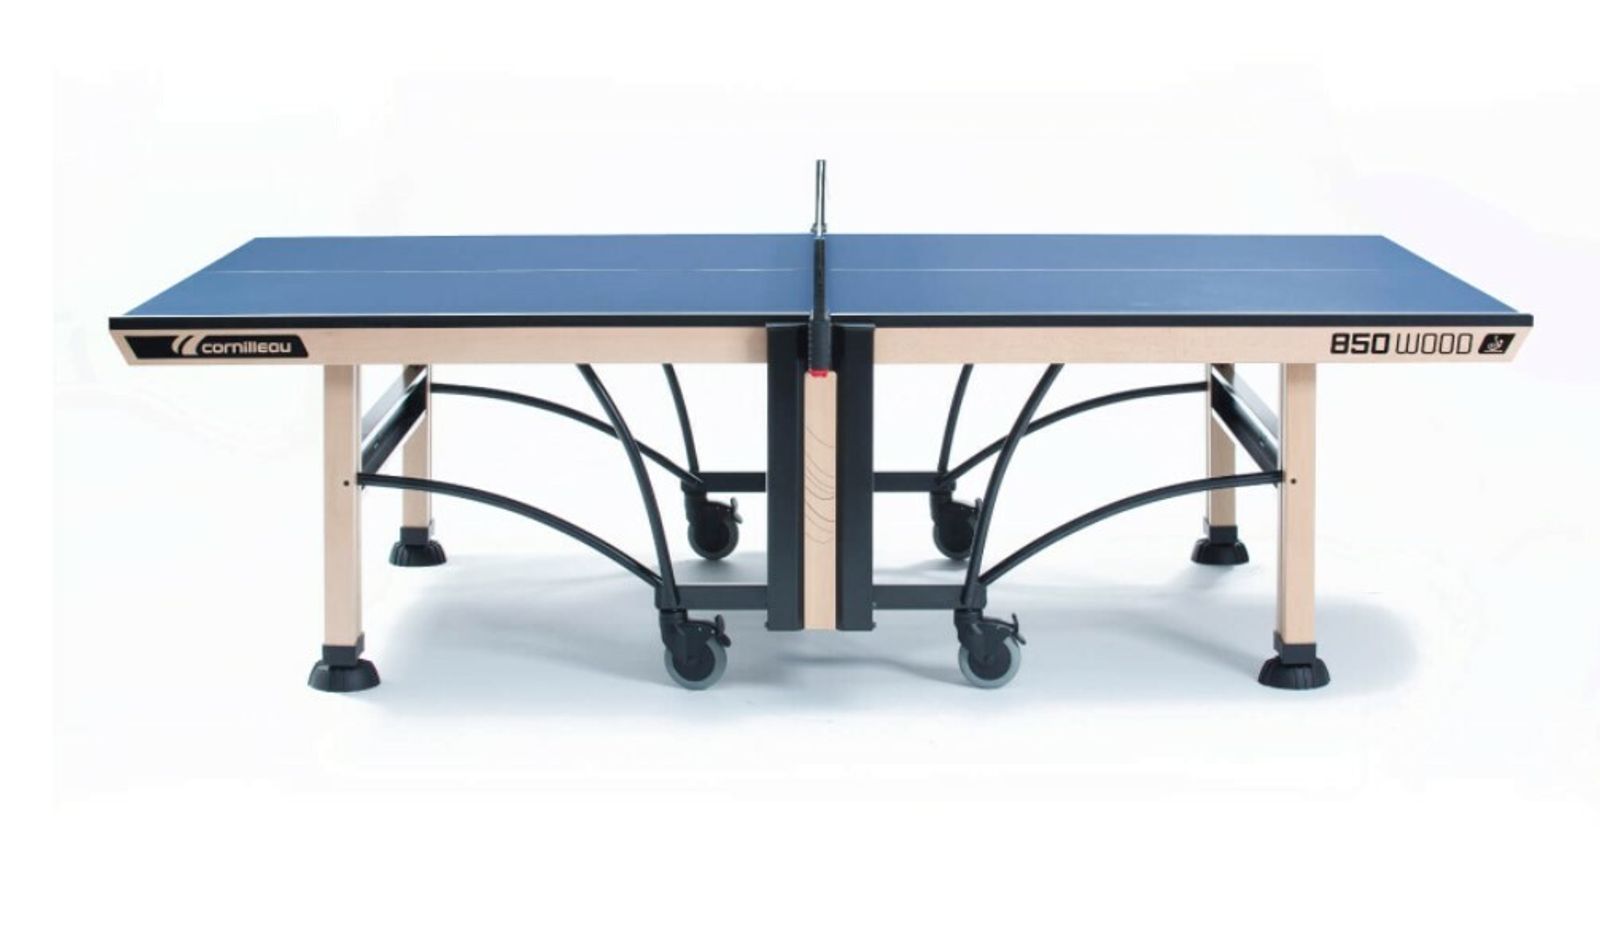 Теннисный стол Cornilleau складной профессиональный COMPETITION 850 WOOD ITTF blue 25 мм фото №1